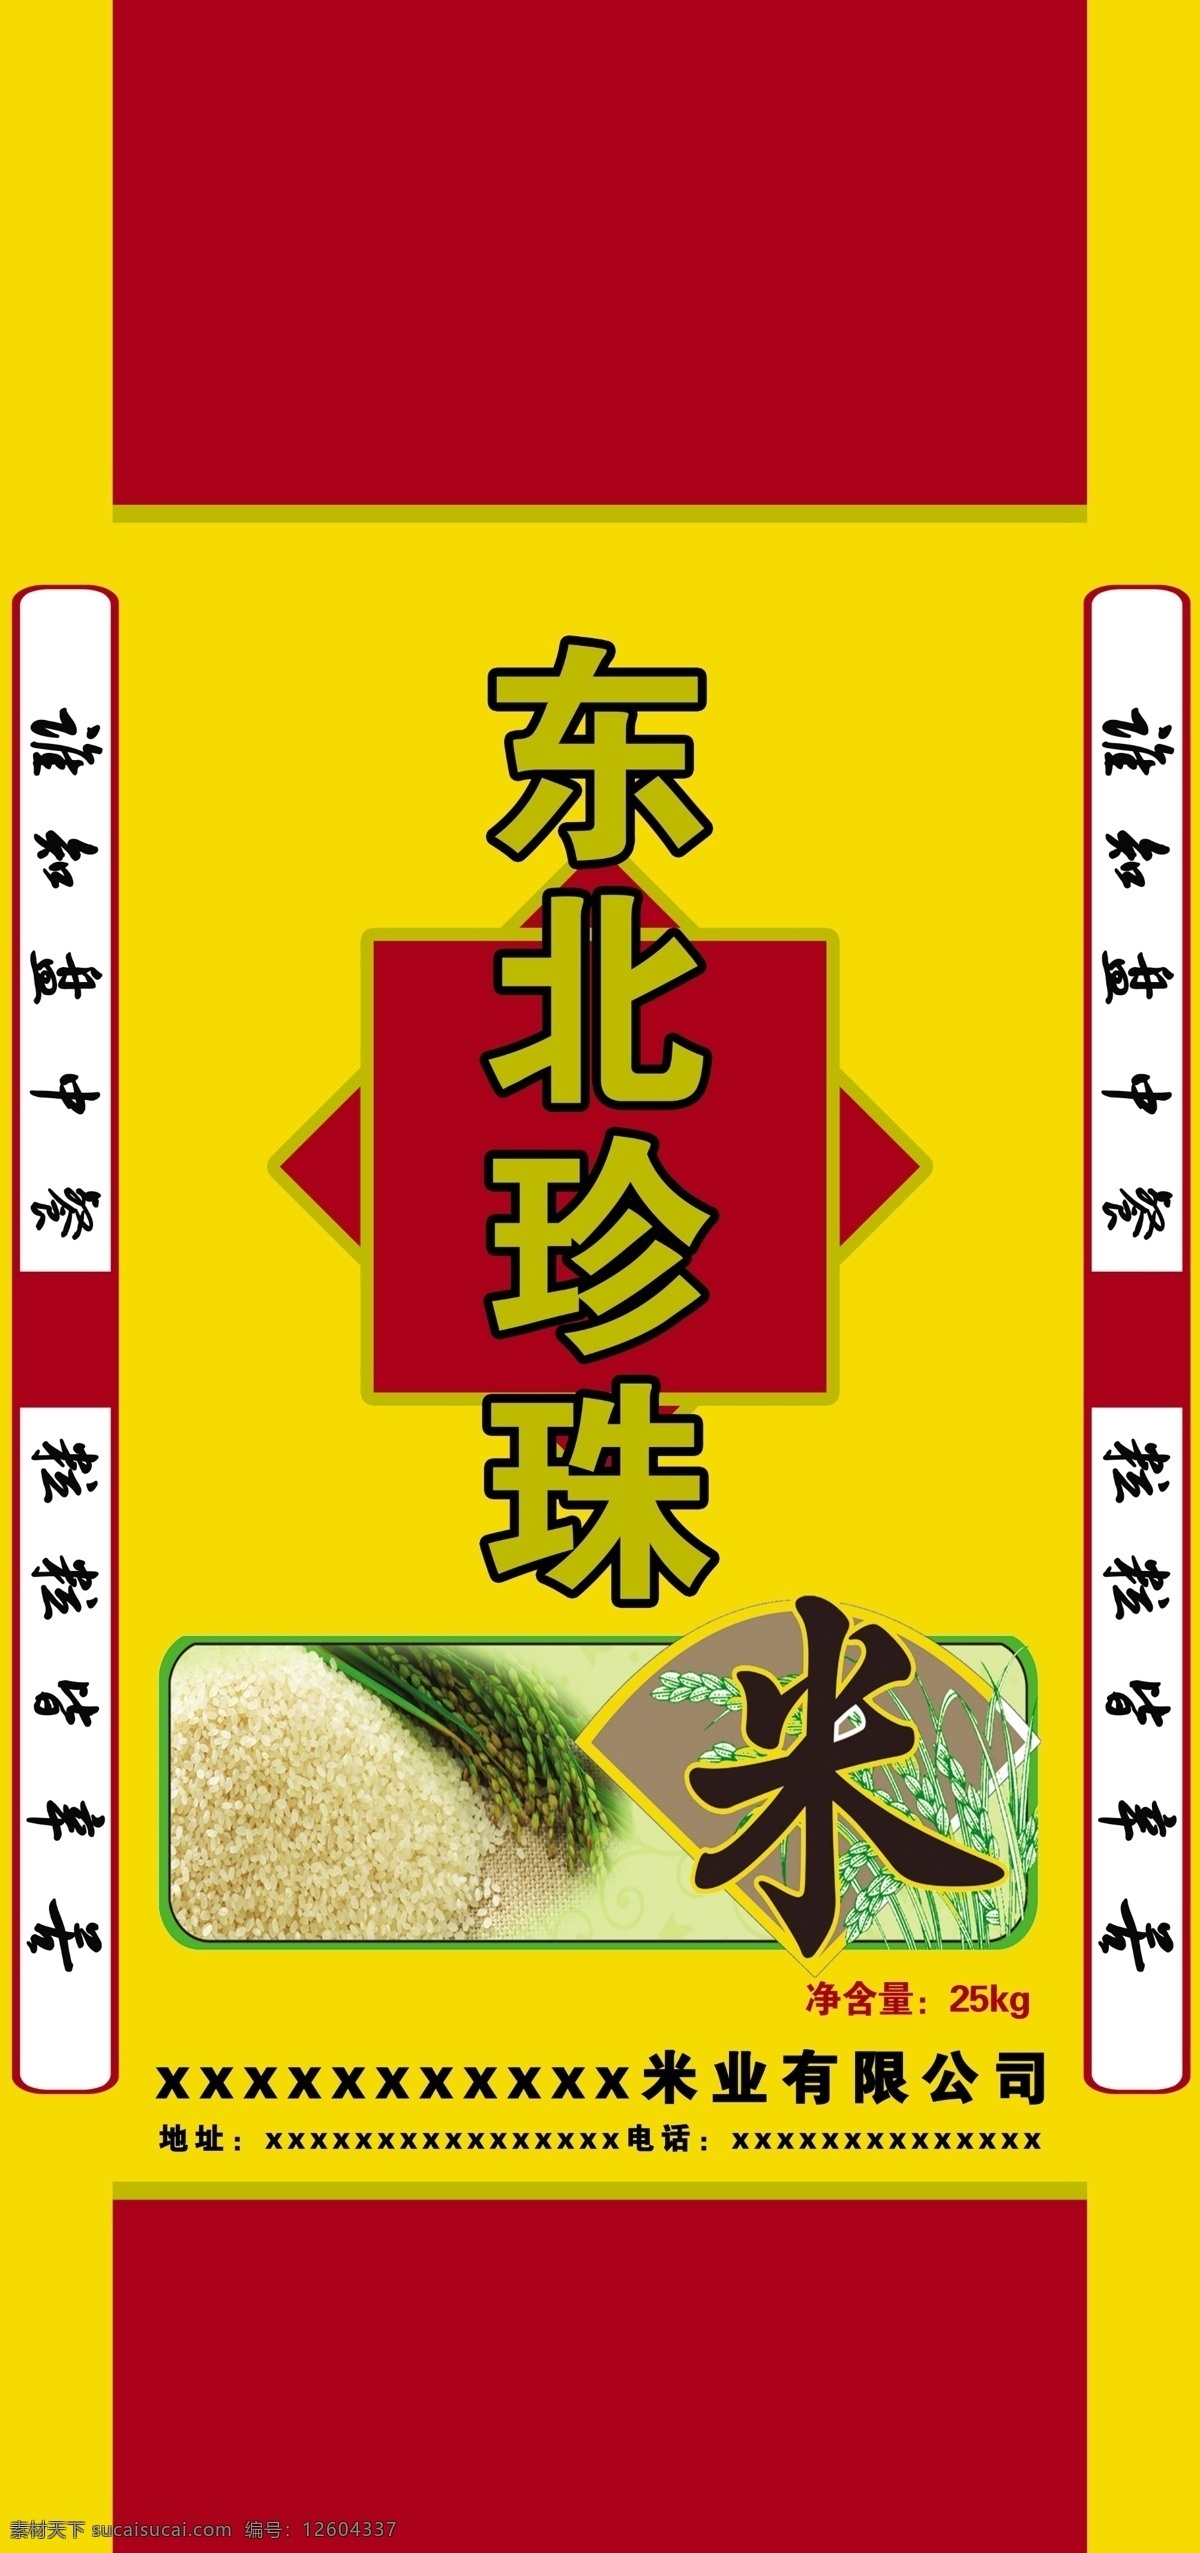 东北珍珠米 珍珠米 psd分层 原创图 大米设计 包装设计 黄色